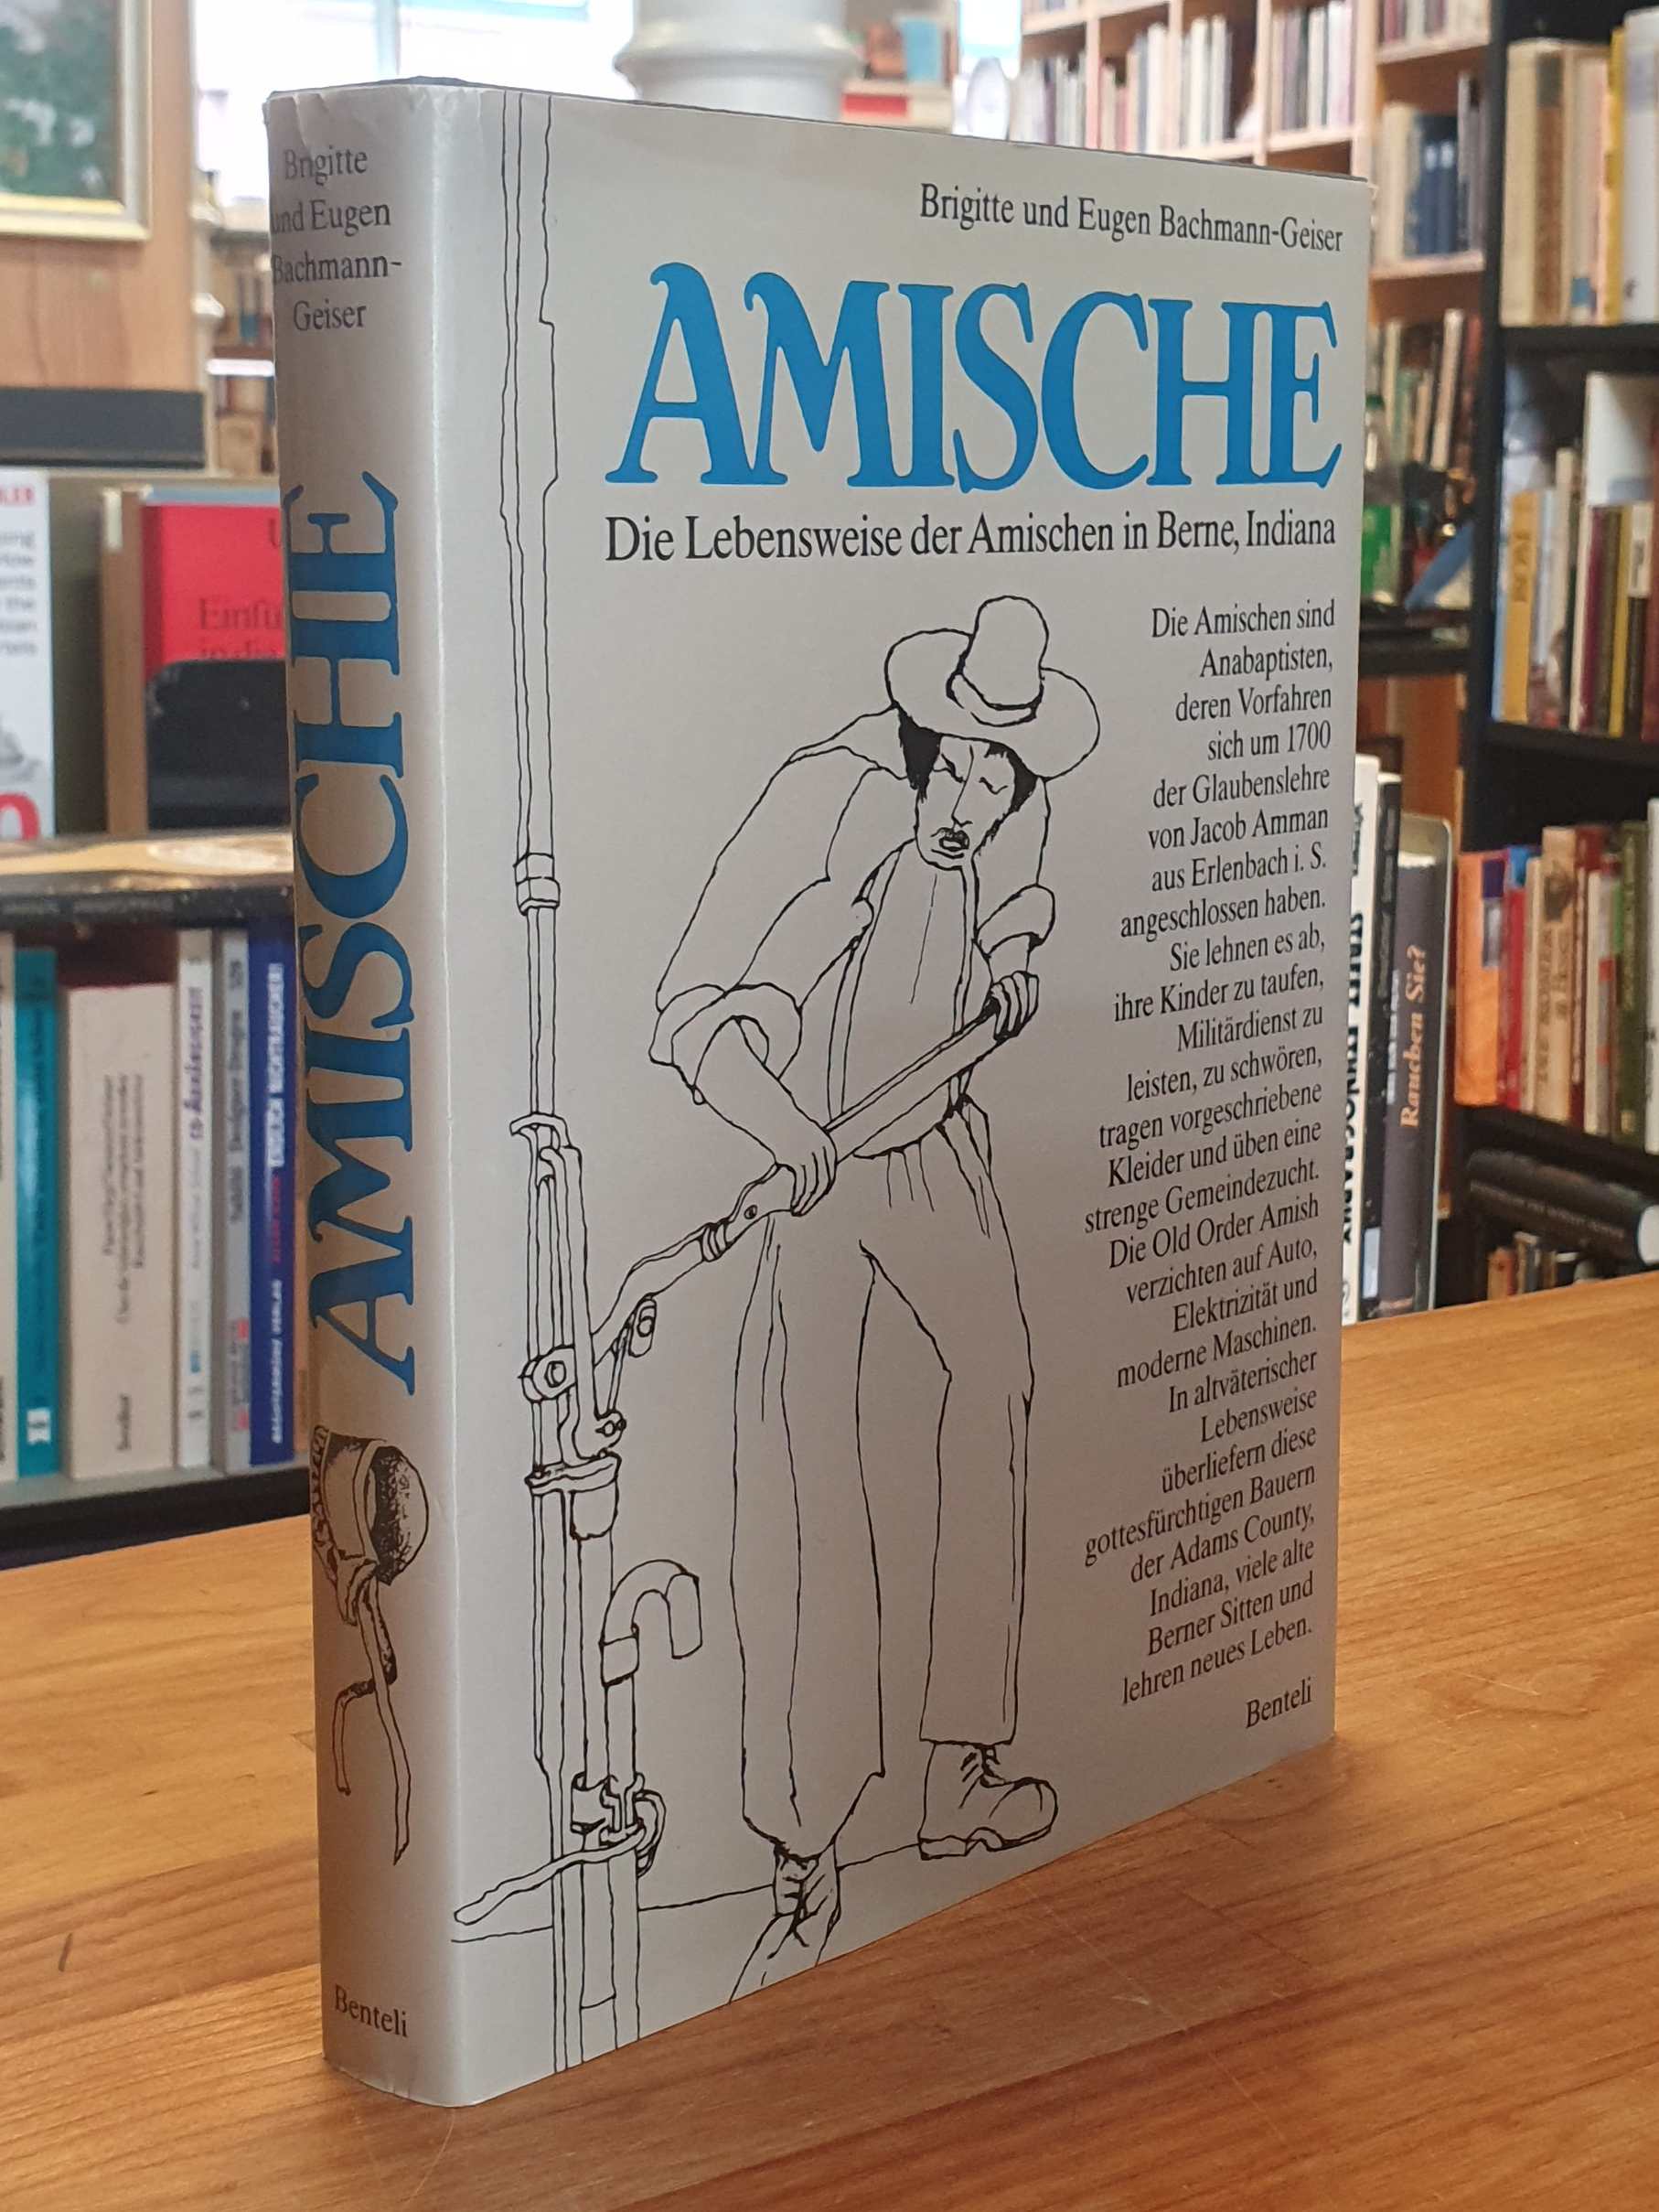 Bachmann-Geiser, Amische – Die Lebensweise der Amischen in Berne, Indiana – Eine